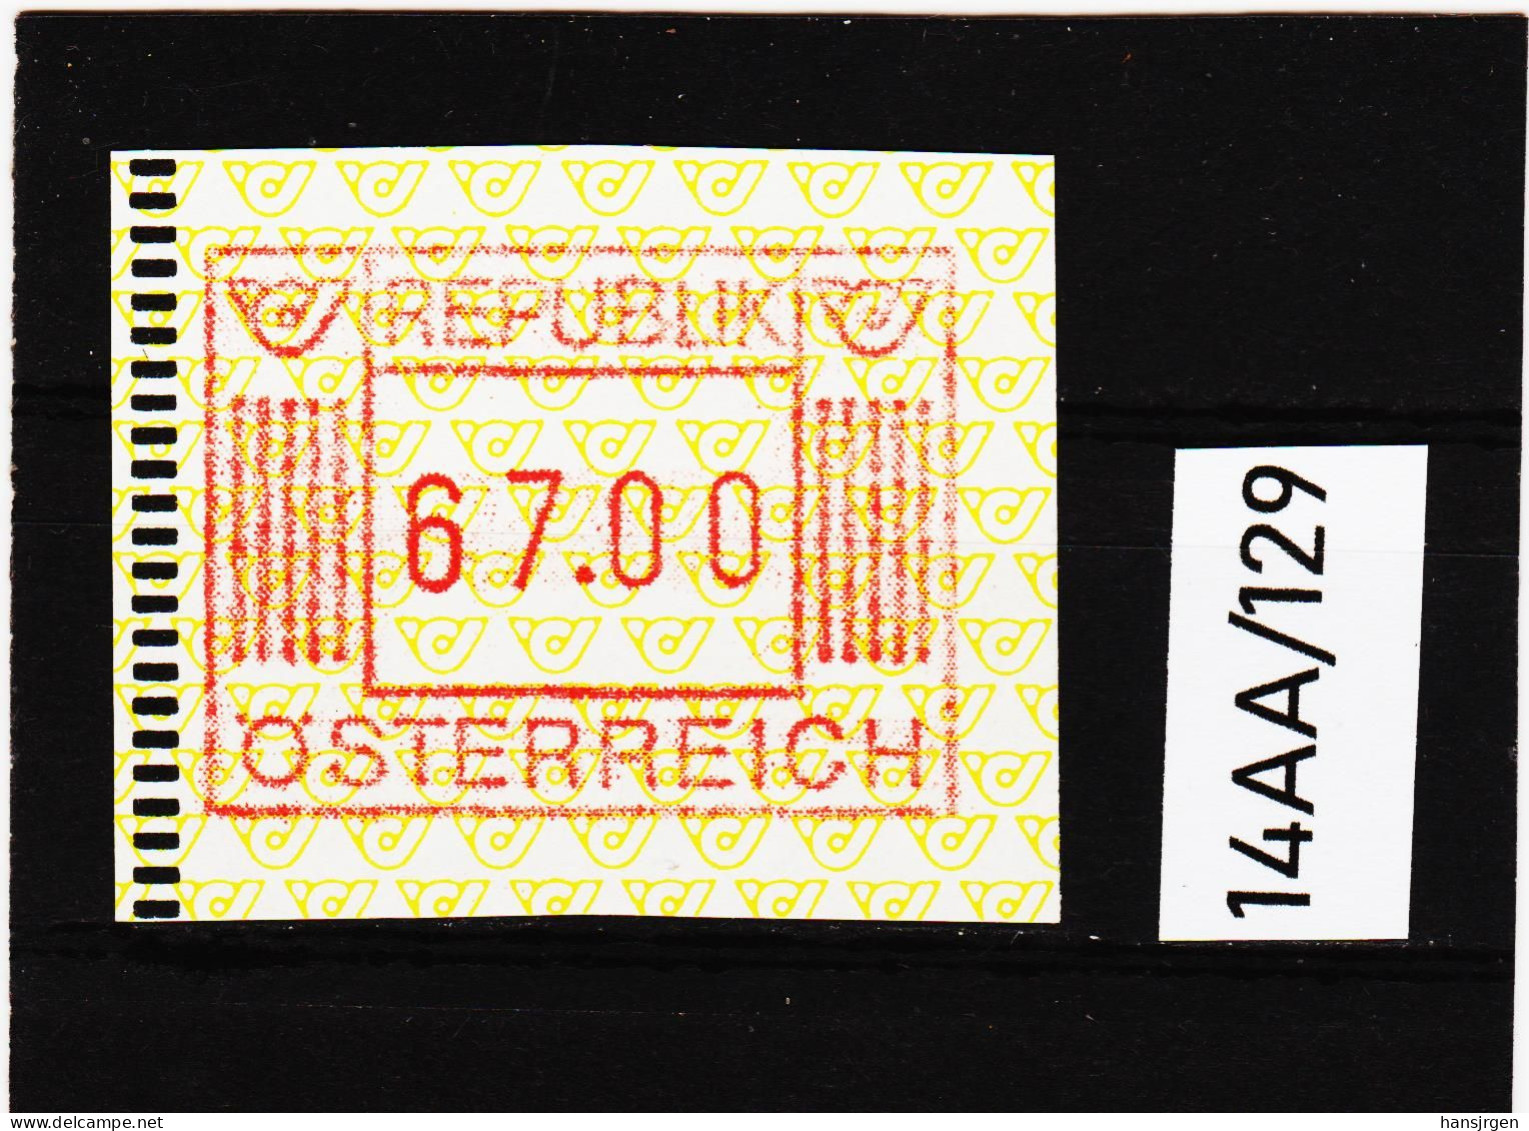 14AA/129  ÖSTERREICH 1983 AUTOMATENMARKEN  A N K  1. AUSGABE  67,00 SCHILLING   ** Postfrisch - Machine Labels [ATM]